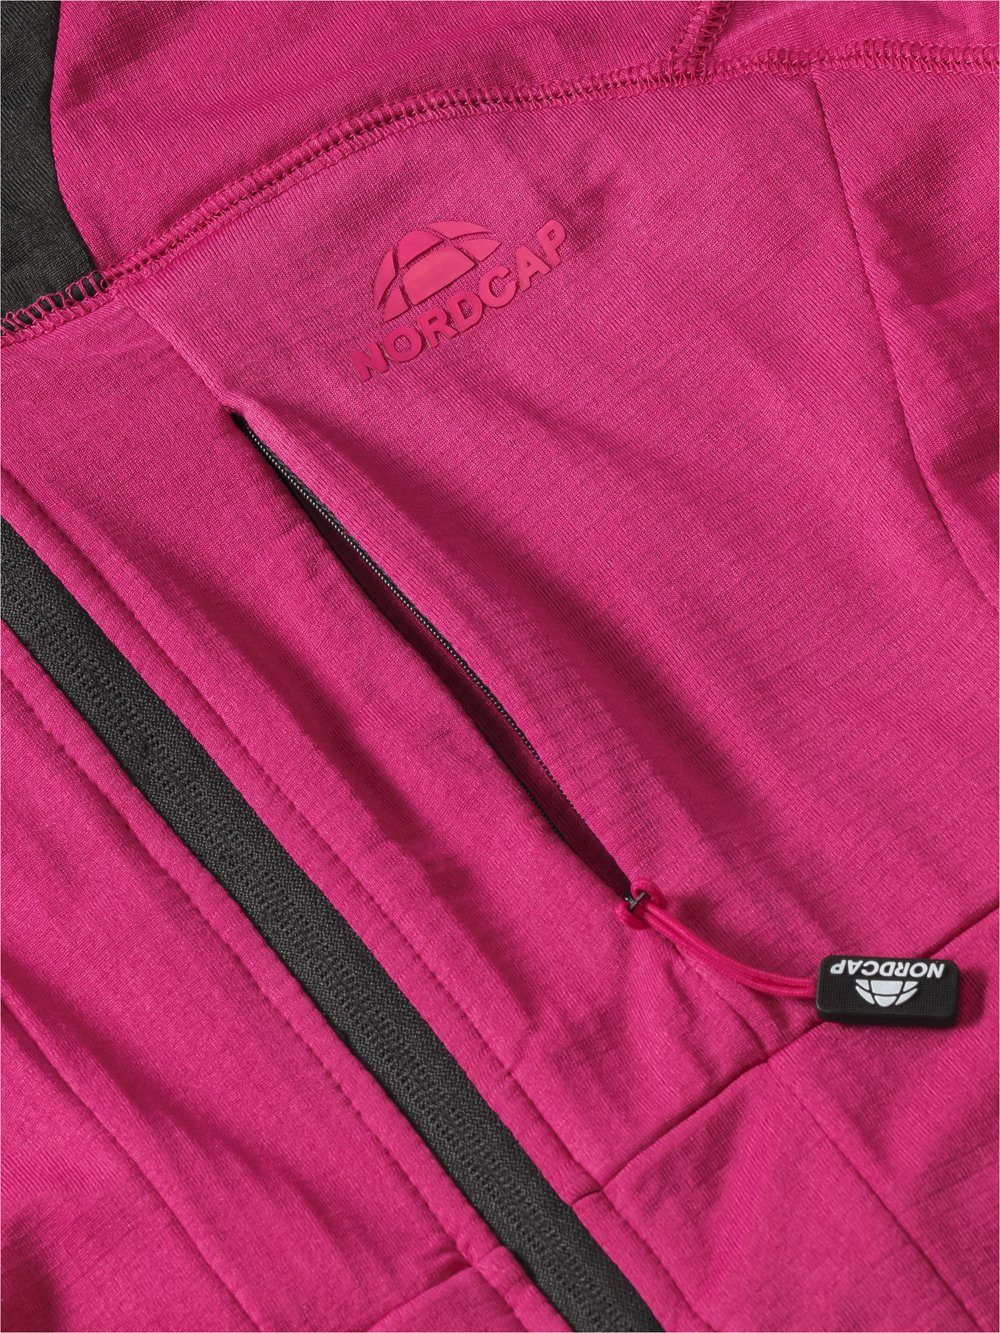 Kapuzen-Jacke Funktionsjacke in Sweat-Qualität Nordcap weicher fuchsia farbstarke